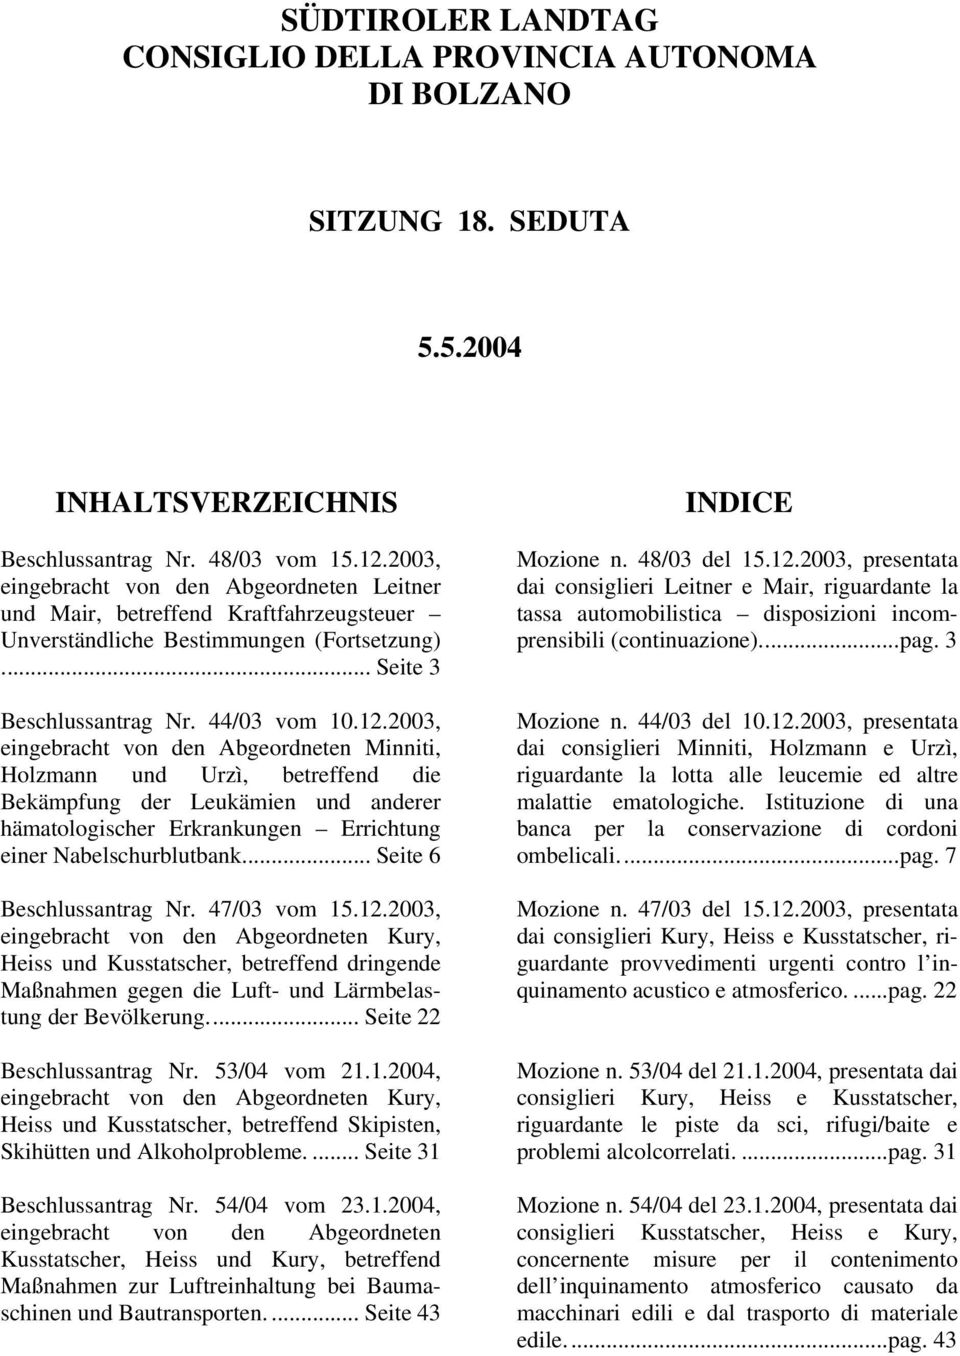 2003, eingebracht von den Abgeordneten Minniti, Holzmann und Urzì, betreffend die Bekämpfung der Leukämien und anderer hämatologischer Erkrankungen Errichtung einer Nabelschurblutbank.